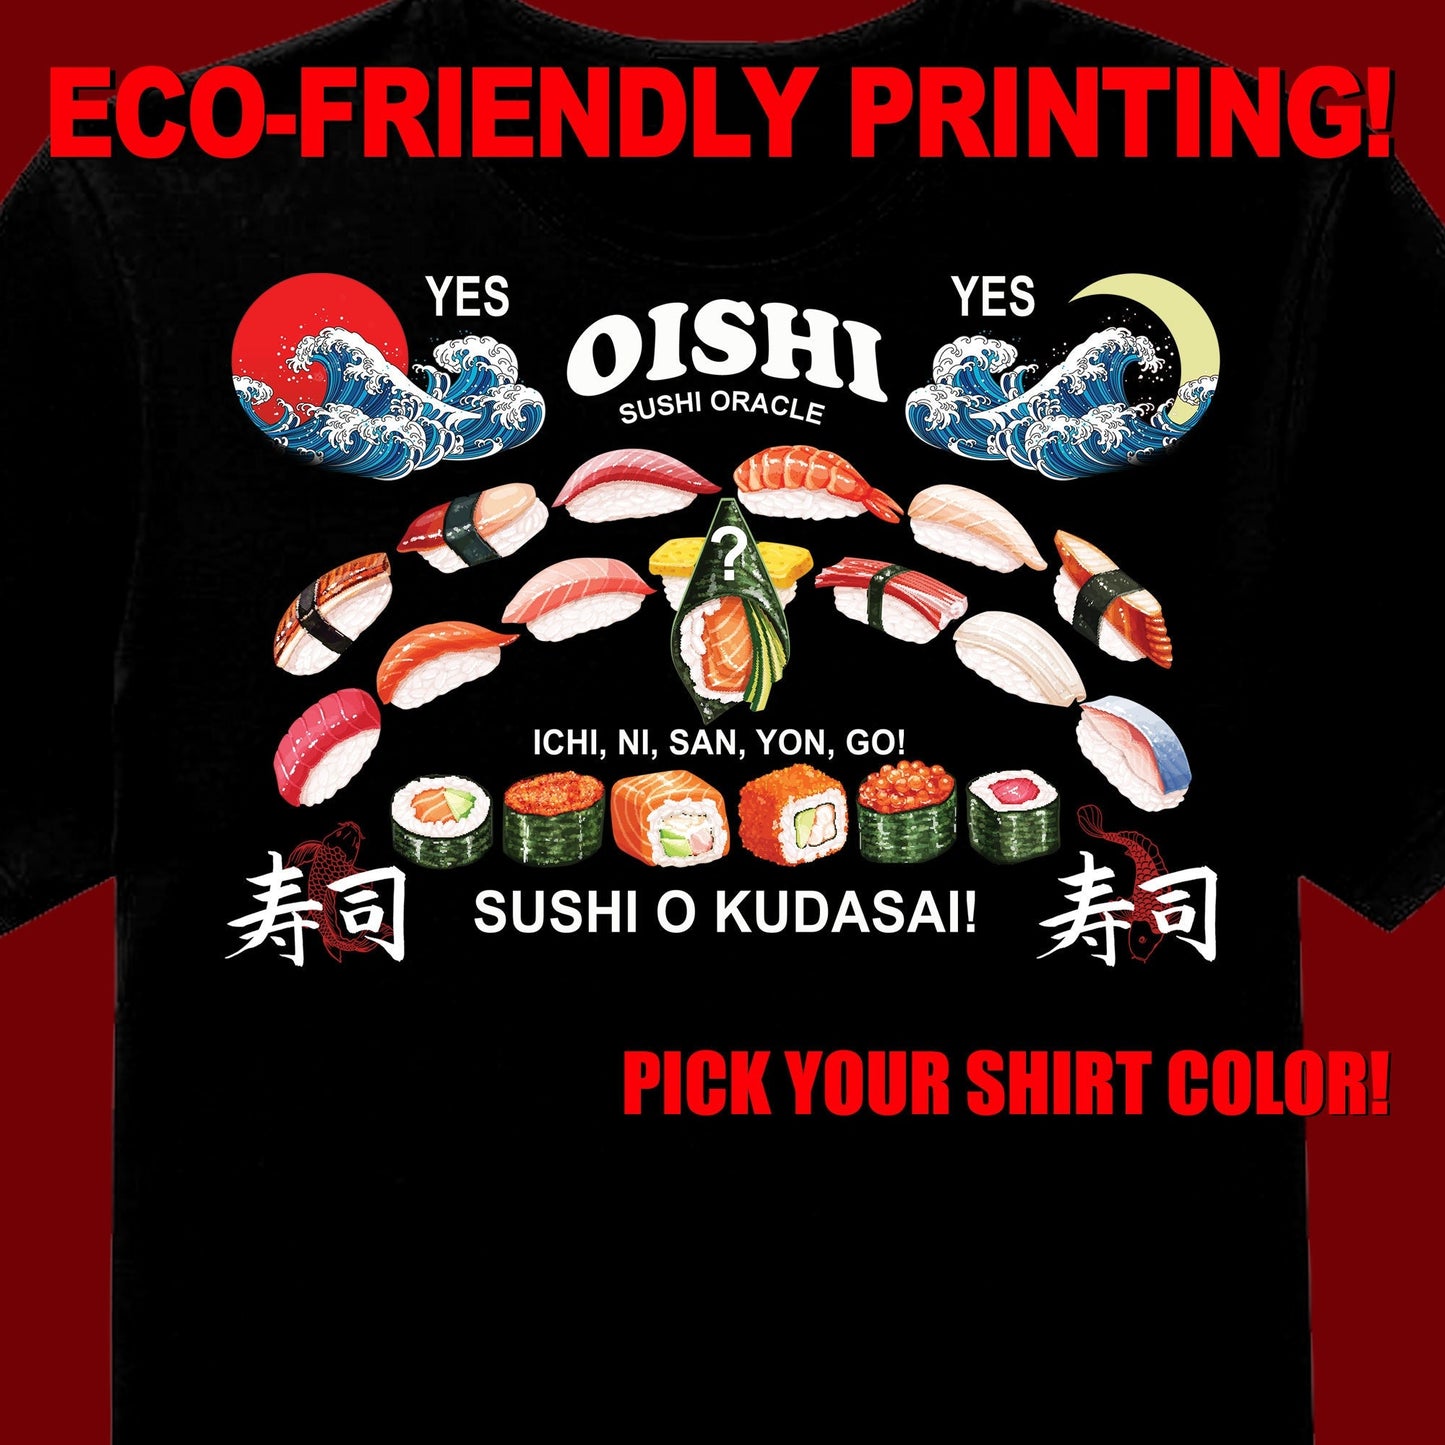 Sushi Ouija T Shirt, Oishi Sushi Tee, Sushi Gift, Sushi Clothing